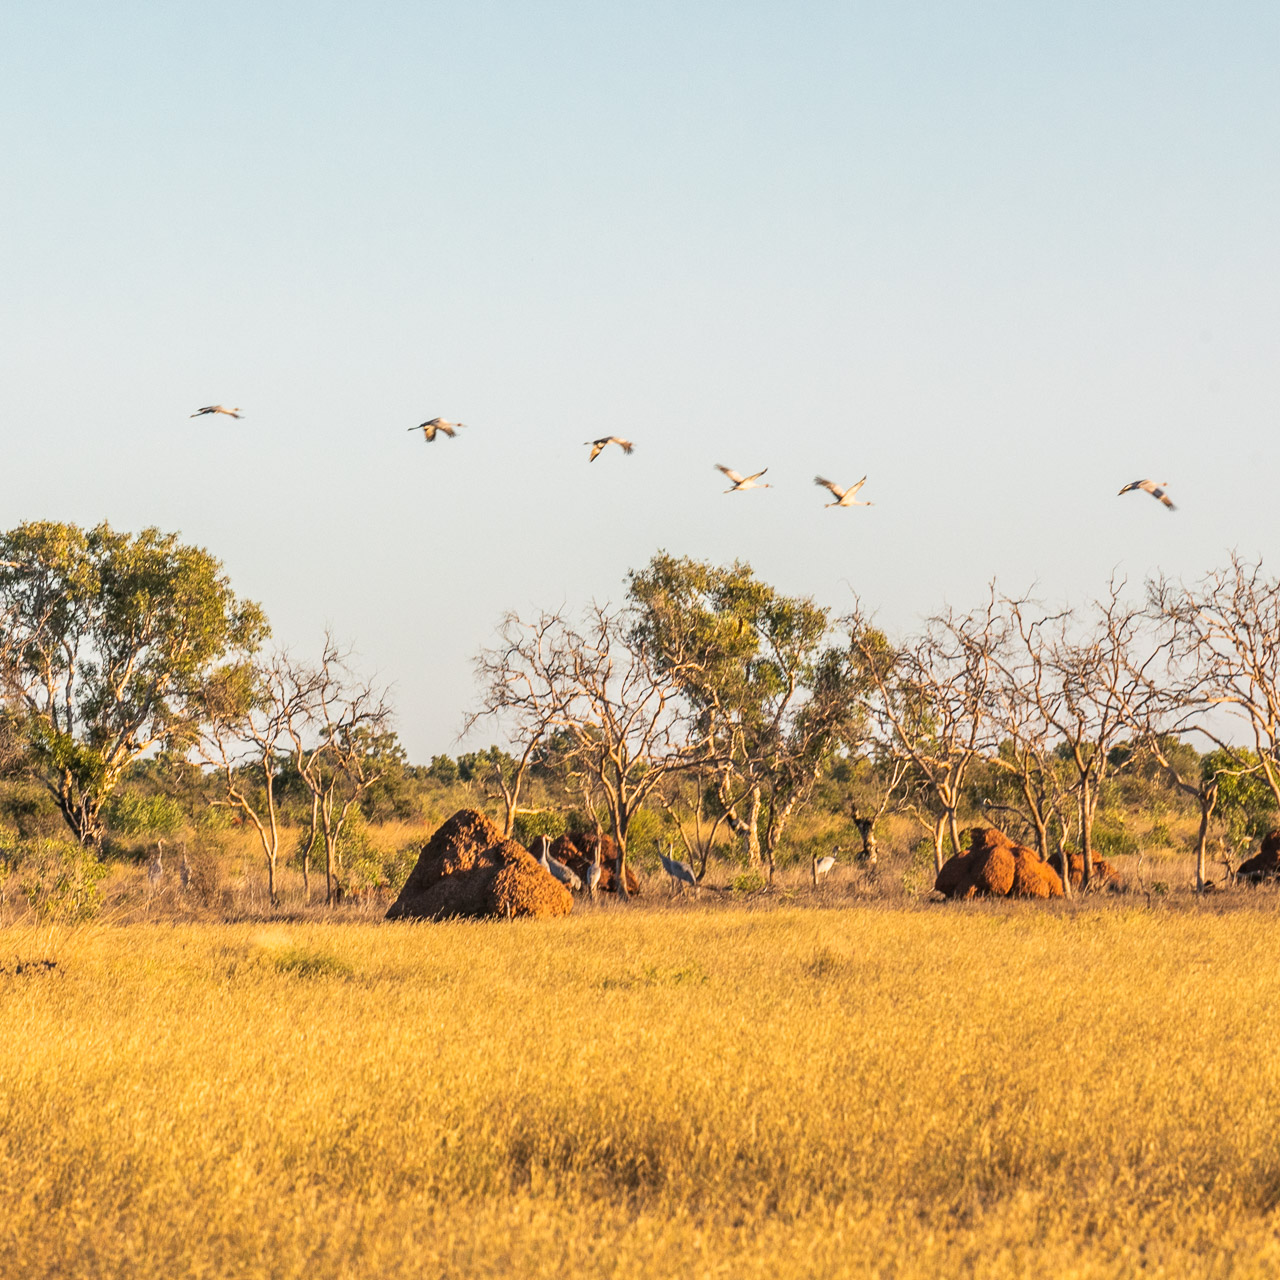 Brolgas and termite hills on the Pilbara coast